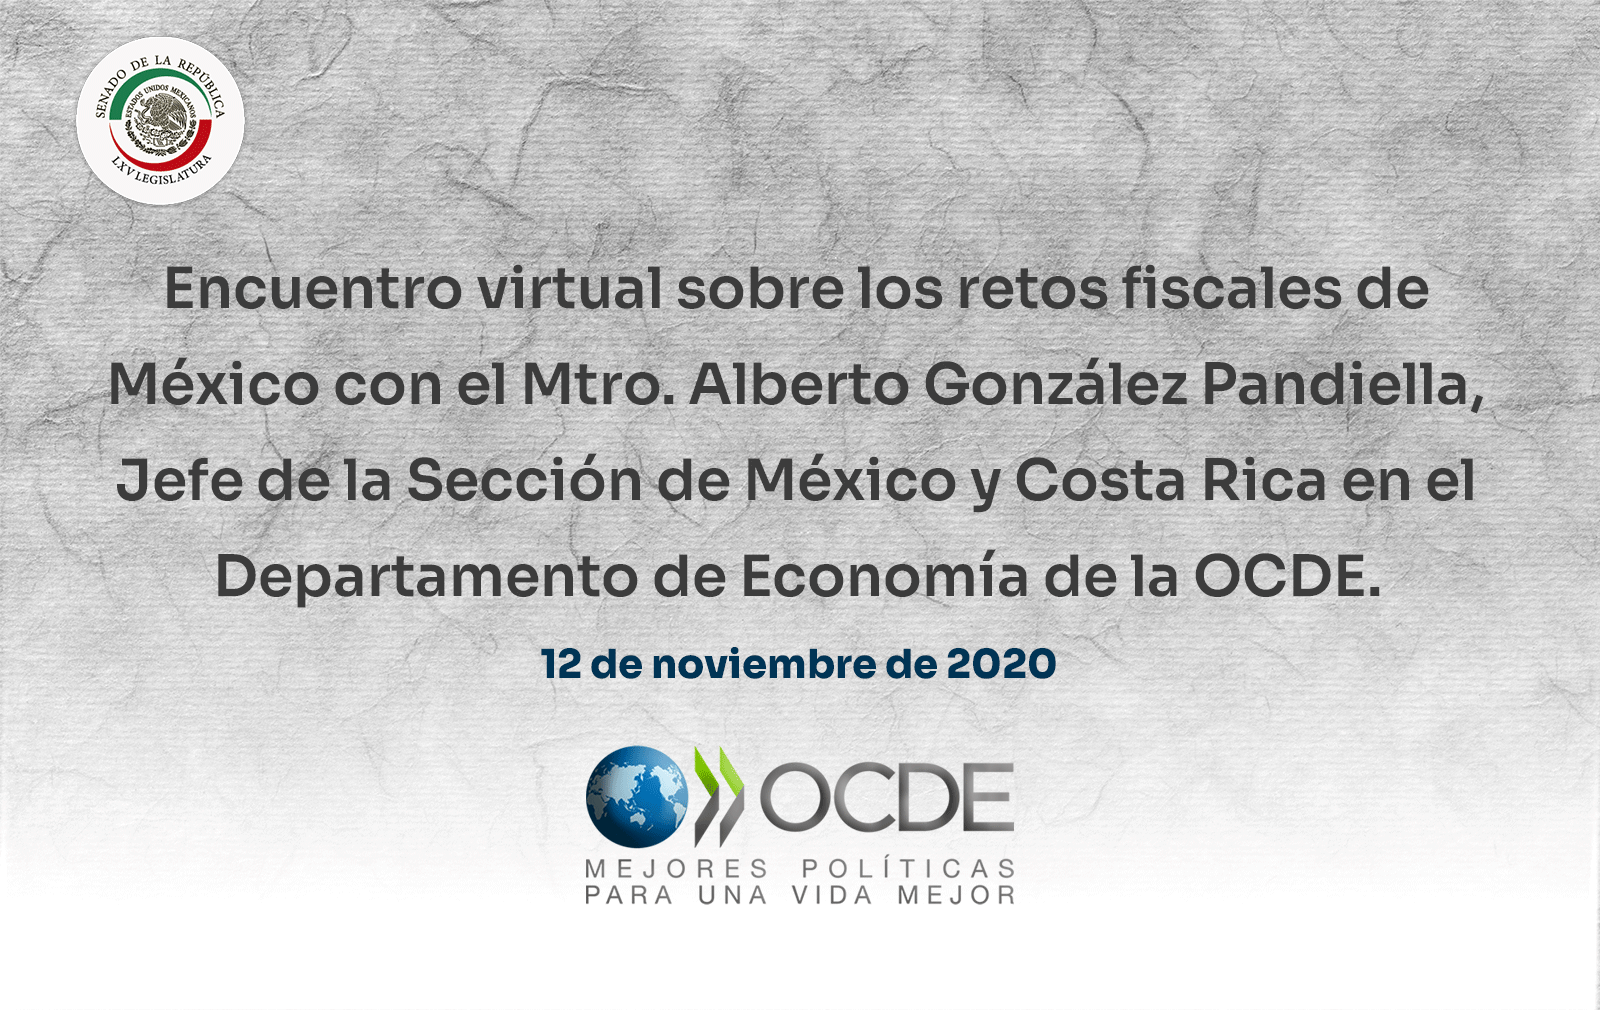 Encuentro virtual sobre los retos fiscales de México con el Mtro. Alberto González Pandiella, Jefe de la Sección de México y Costa Rica en el Departamento de Economía de la OCDE. 12 de noviembre de 2020